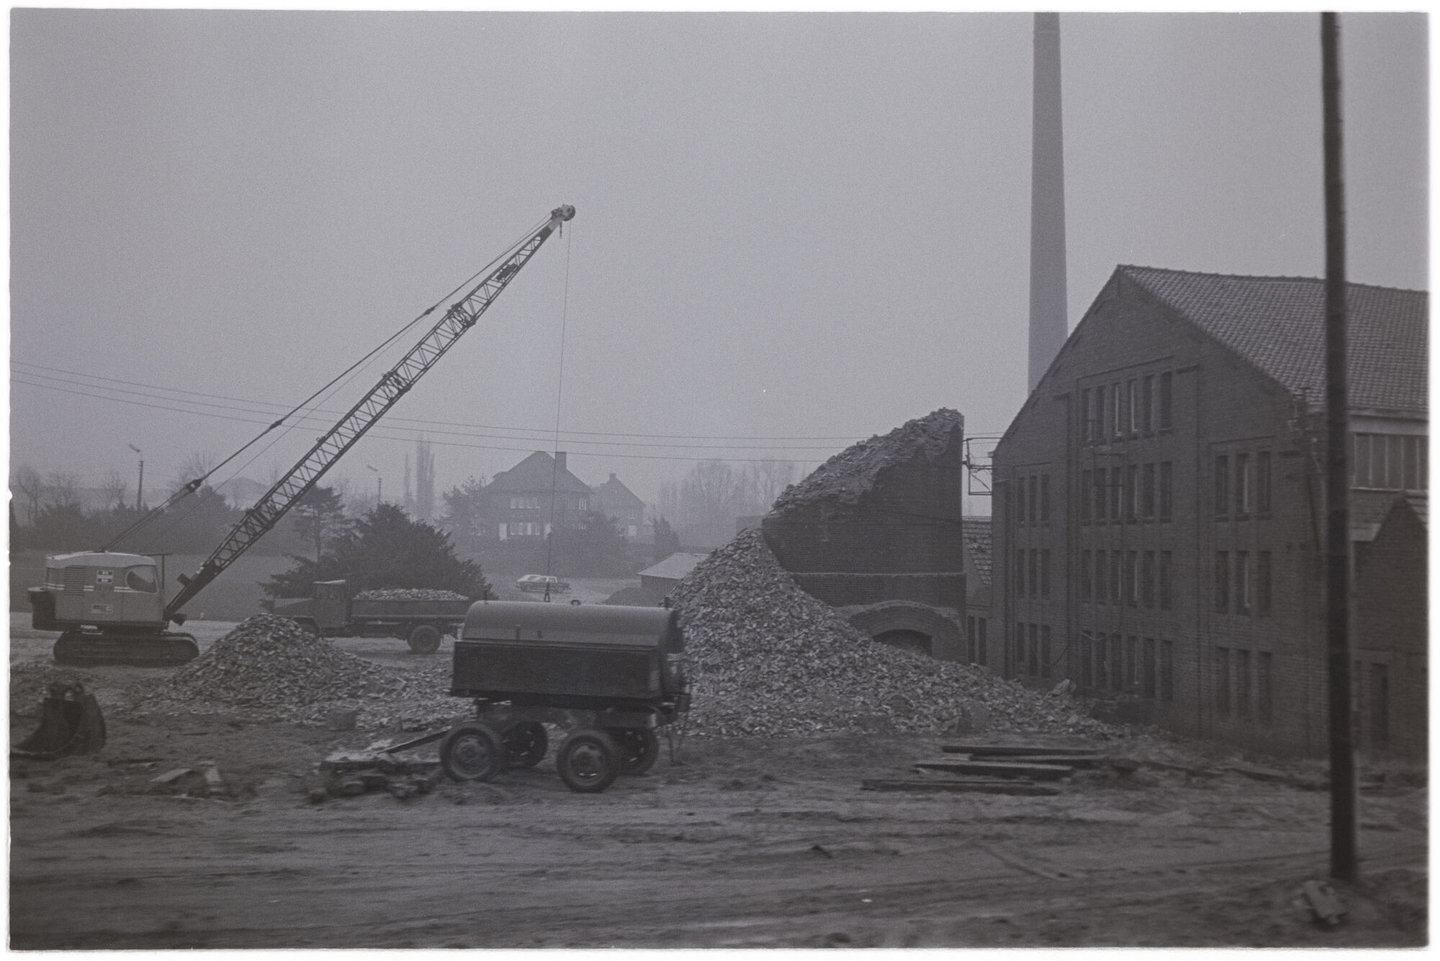 Afbraak van schoorsteen van arseenfabriek Reppel-fabriek in Bocholt